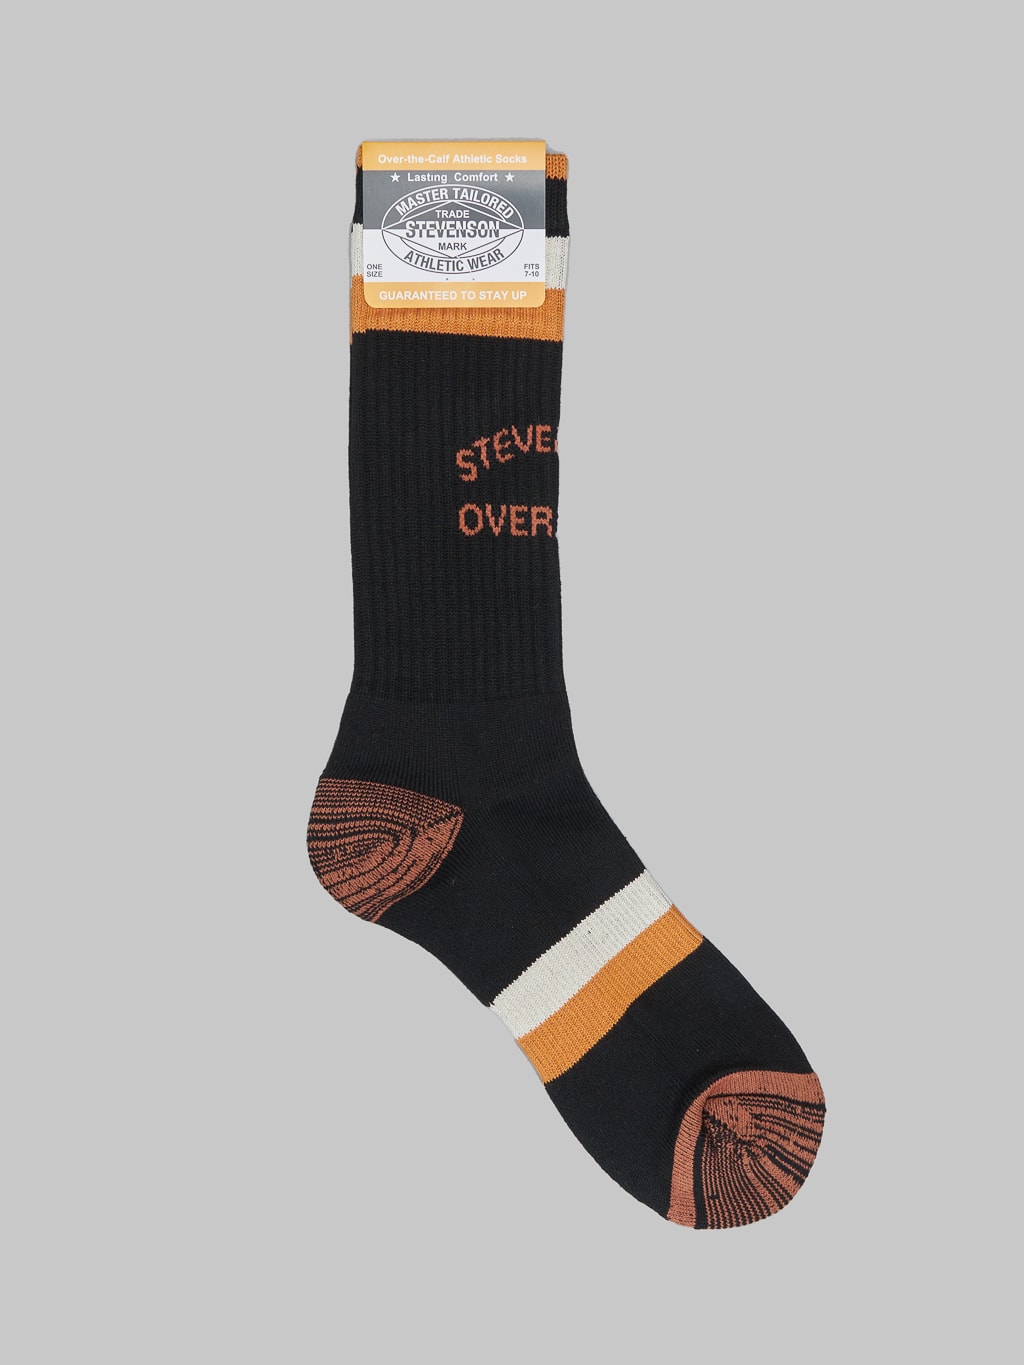 Stevenson Overall Co. Athletic Socks Black